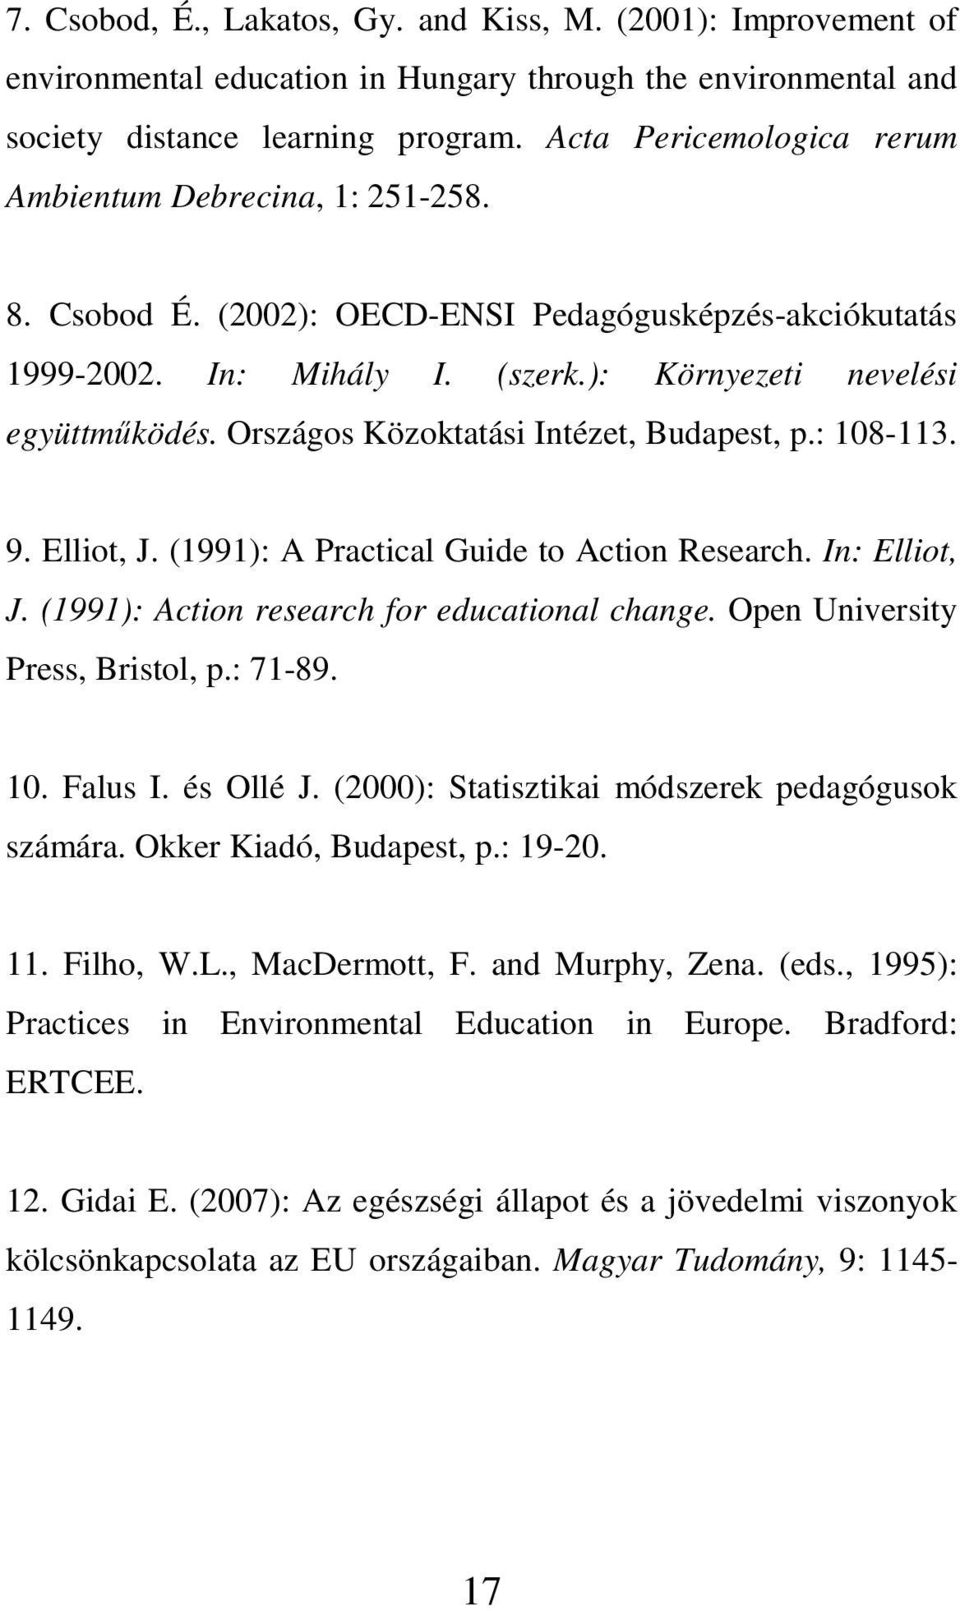 Országos Közoktatási Intézet, Budapest, p.: 108-113. 9. Elliot, J. (1991): A Practical Guide to Action Research. In: Elliot, J. (1991): Action research for educational change.